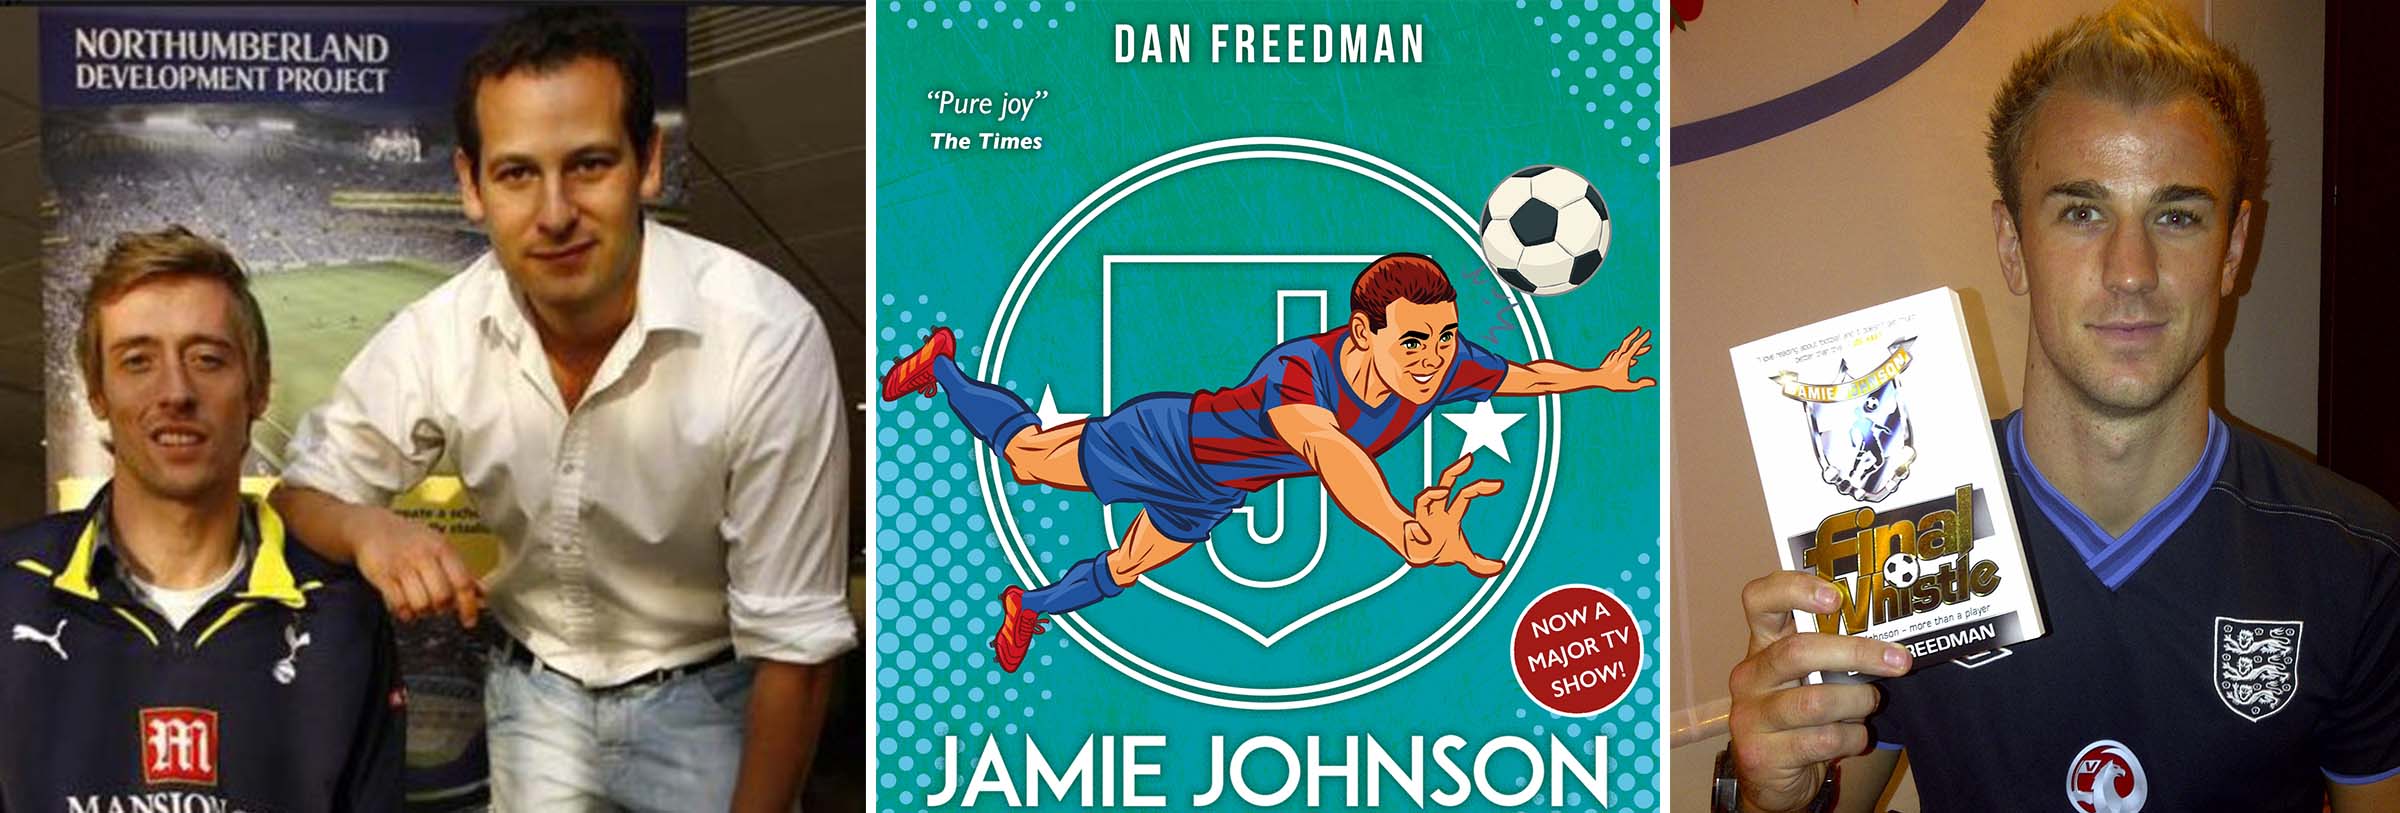 Jamie johnson dan freedman book